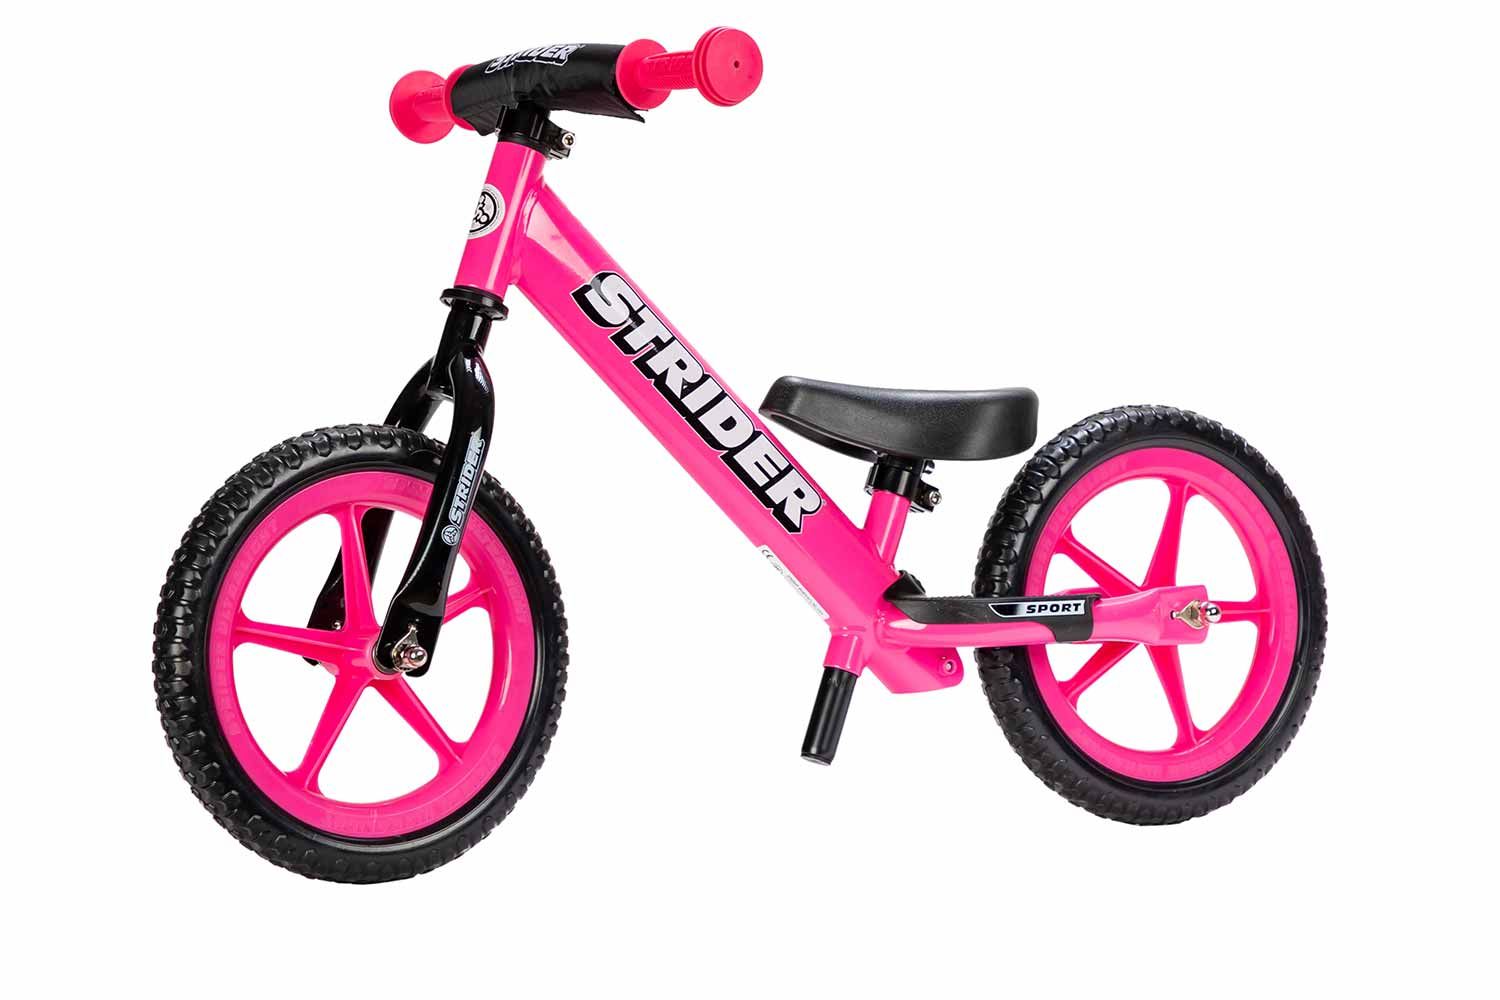 Bubblegum pink Strider Balance bike with pink wheels